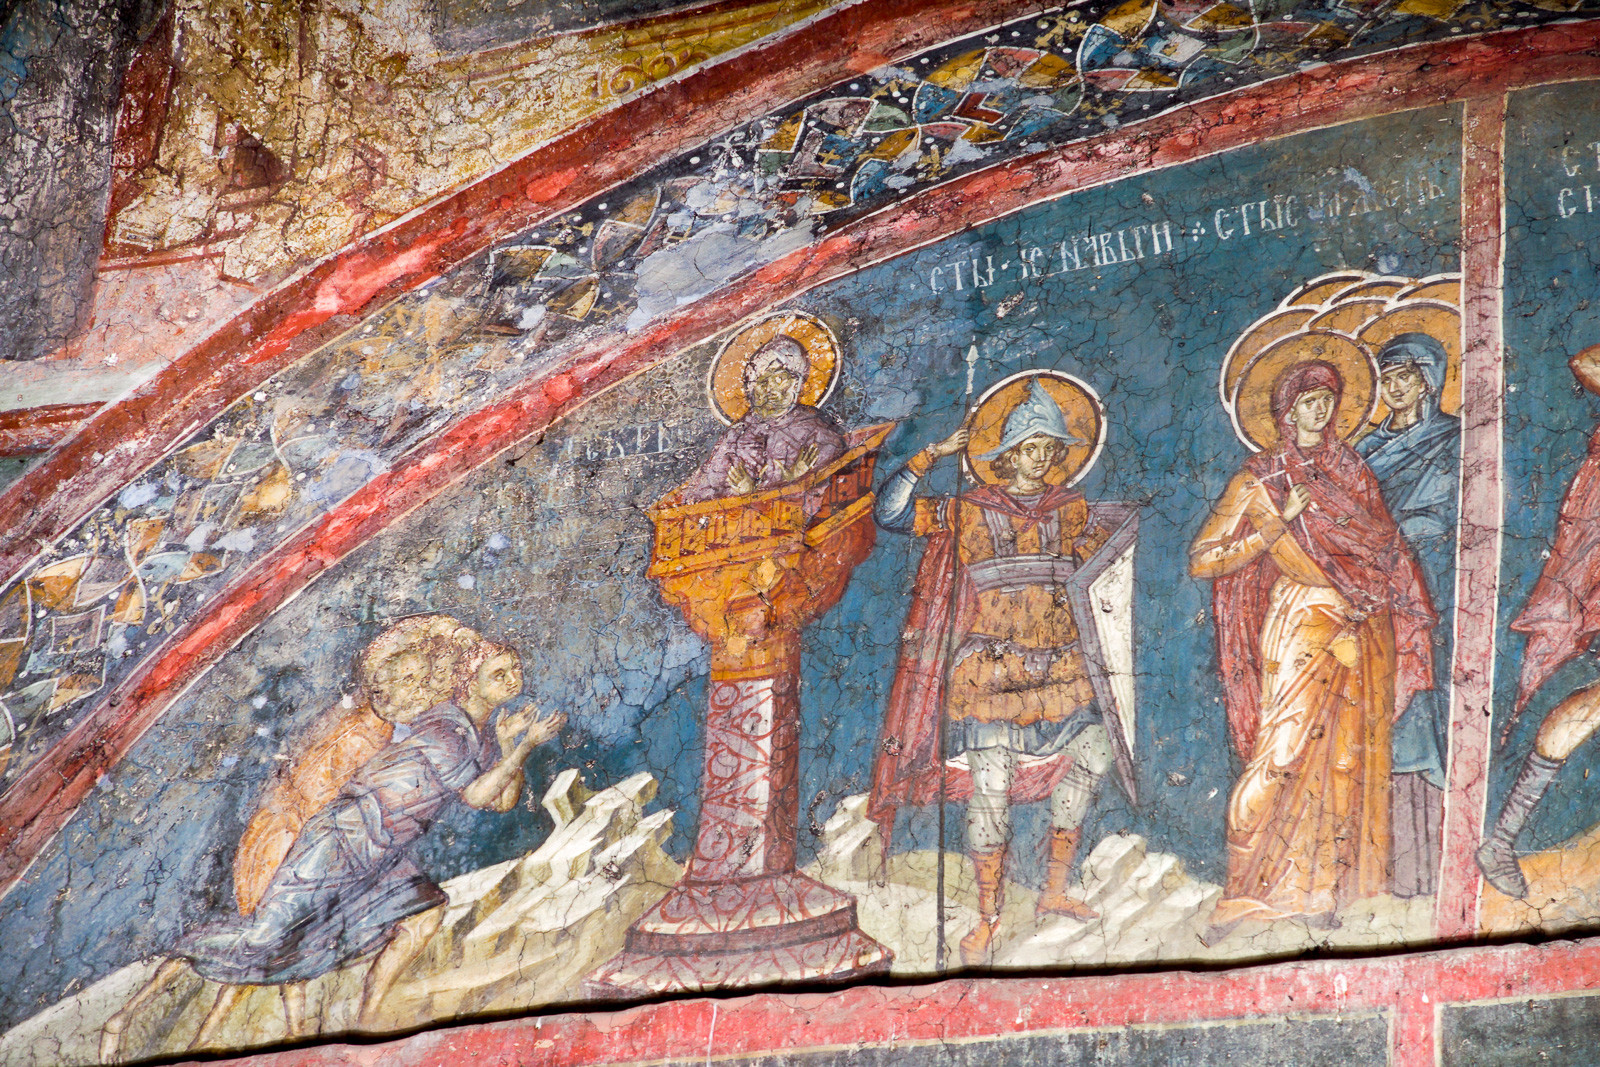 1. септембар - Св. Симеон Столпник (попрсје), Исус Навин (фигура), 40 хераклијских мученица (група фигура)